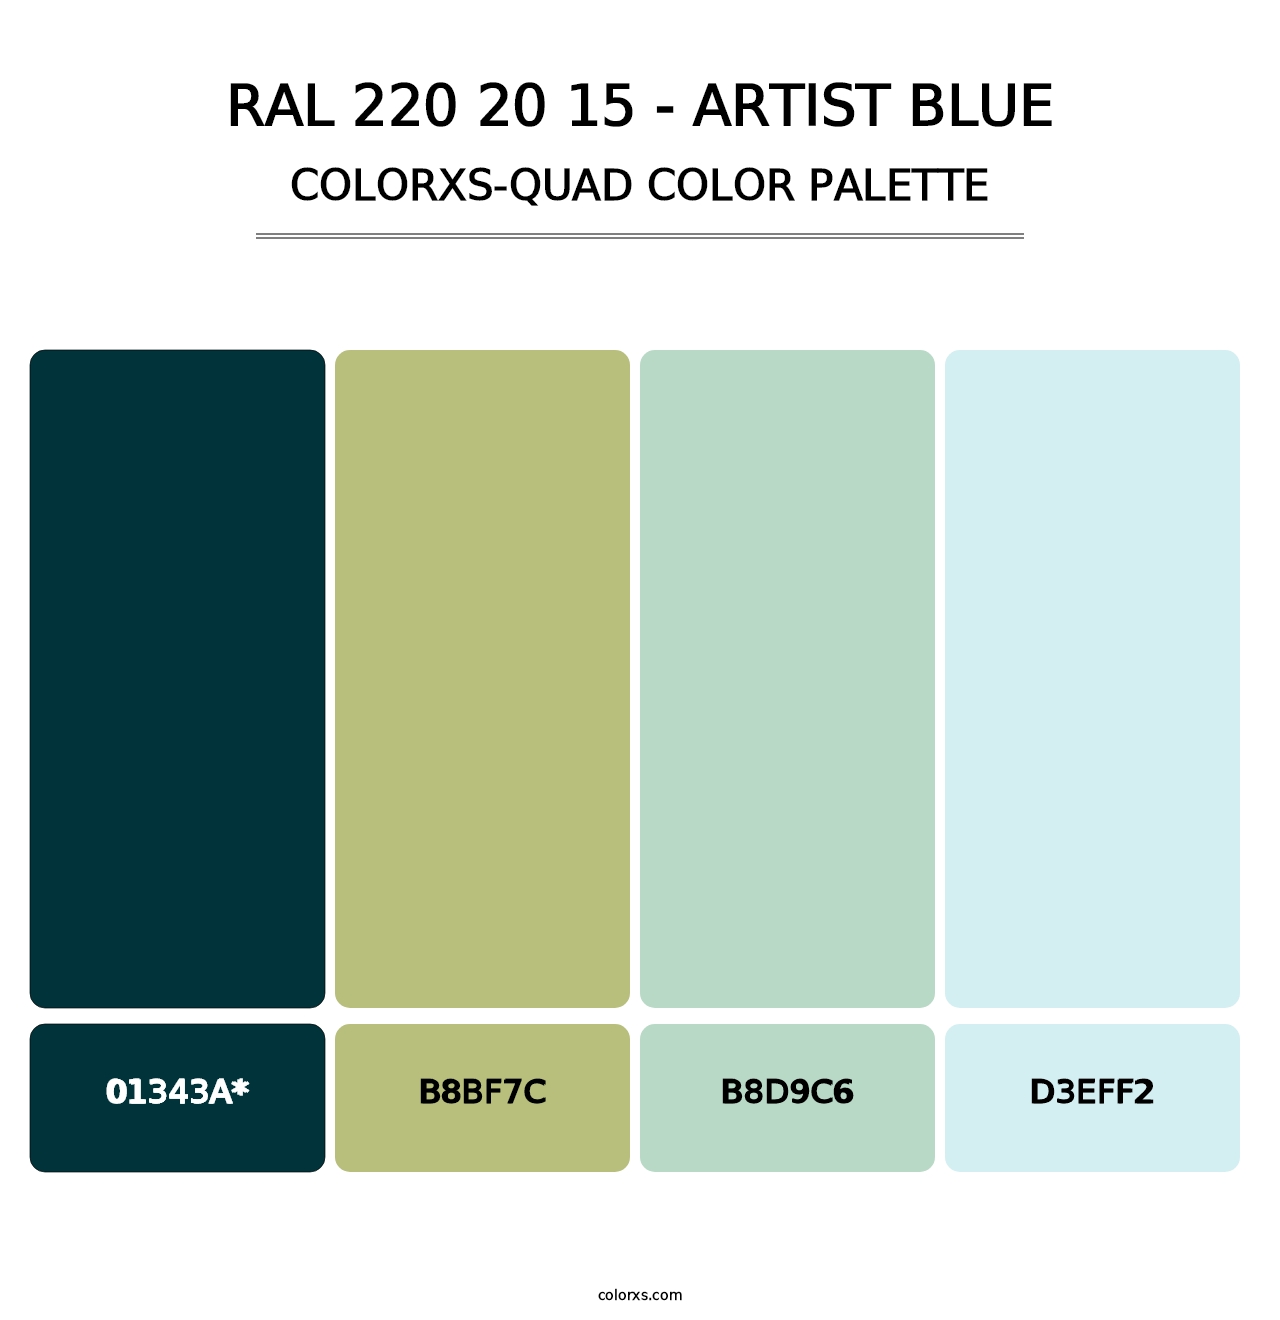 RAL 220 20 15 - Artist Blue - Colorxs Quad Palette